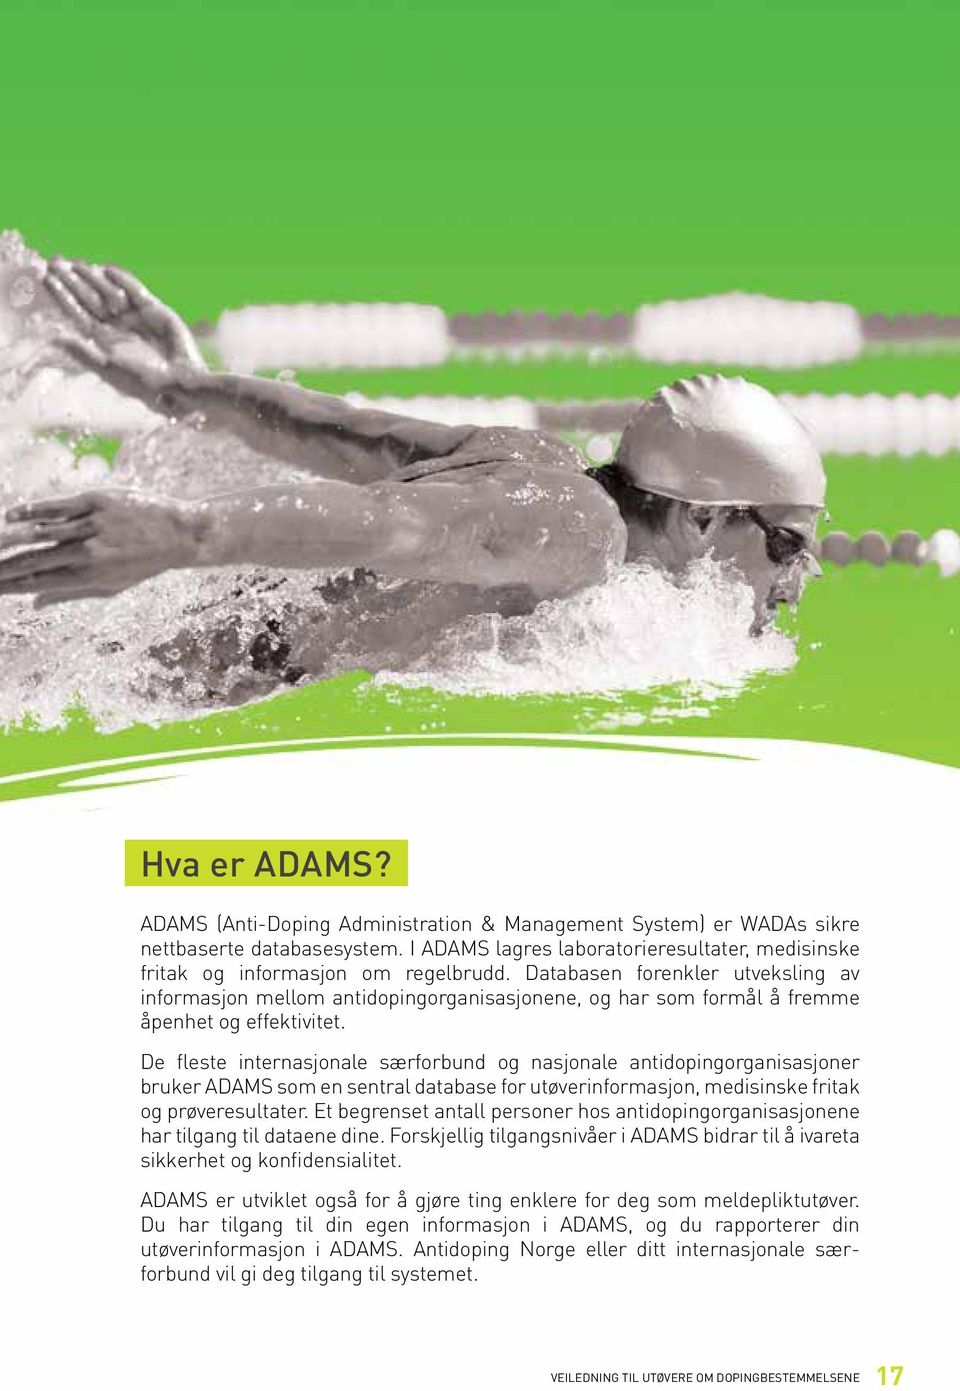 De fleste internasjonale særforbund og nasjonale antidopingorganisasjoner bruker ADAMS som en sentral database for utøverinformasjon, medisinske fritak og prøveresultater.